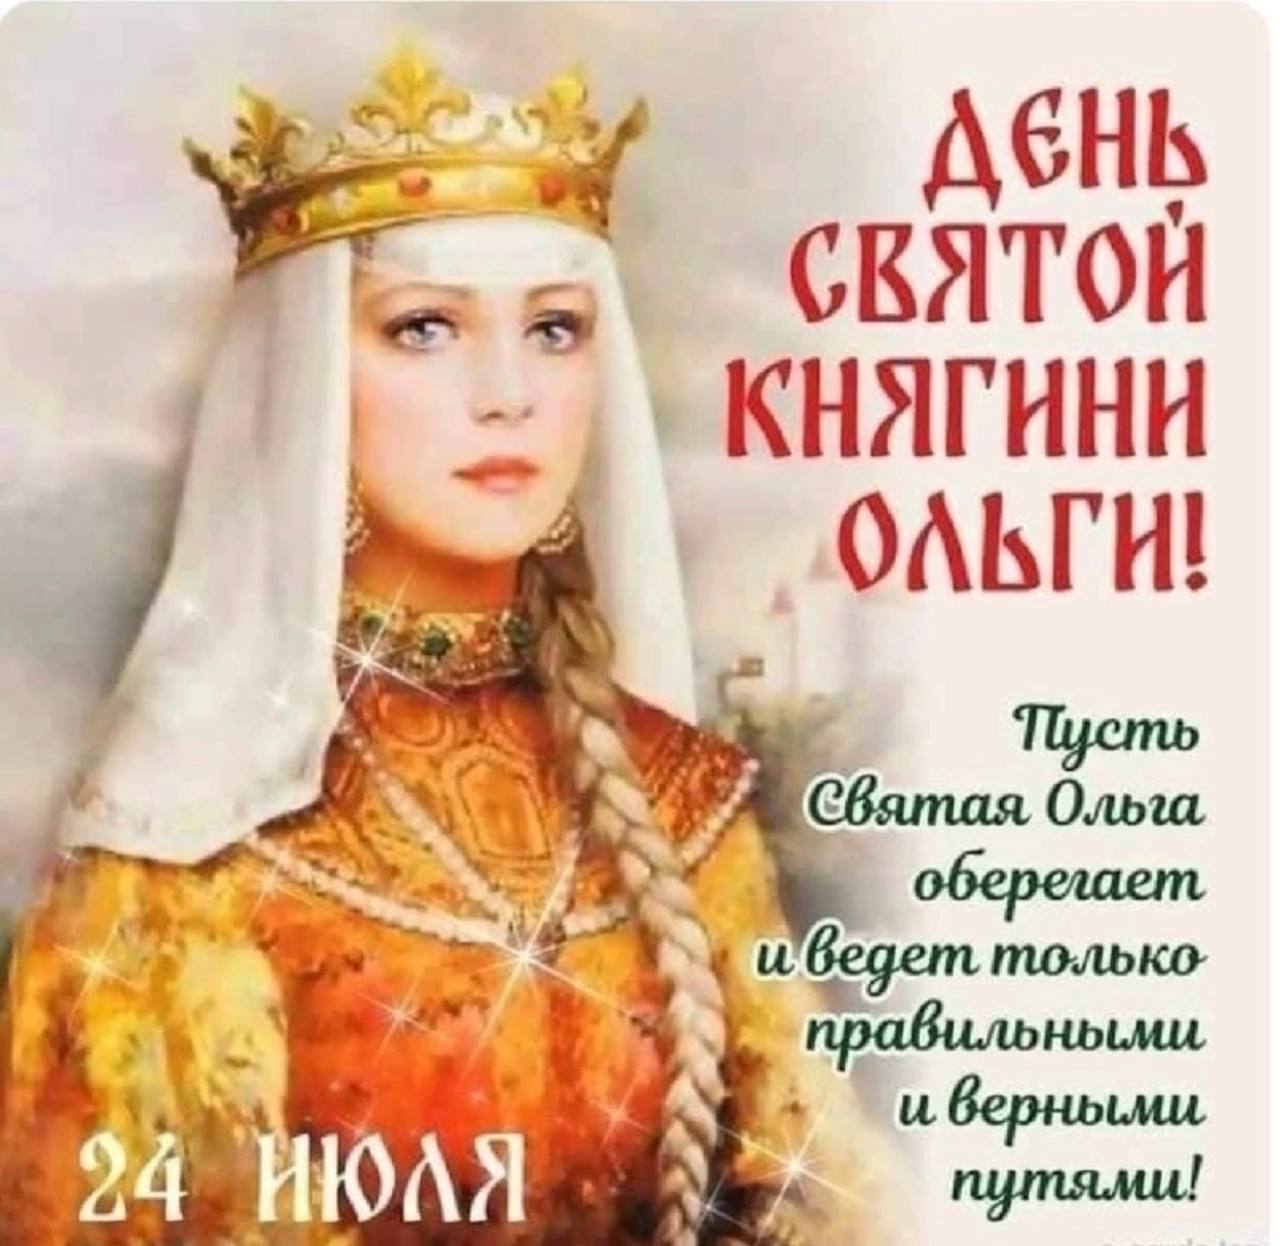 24 Июля день княгини Ольги